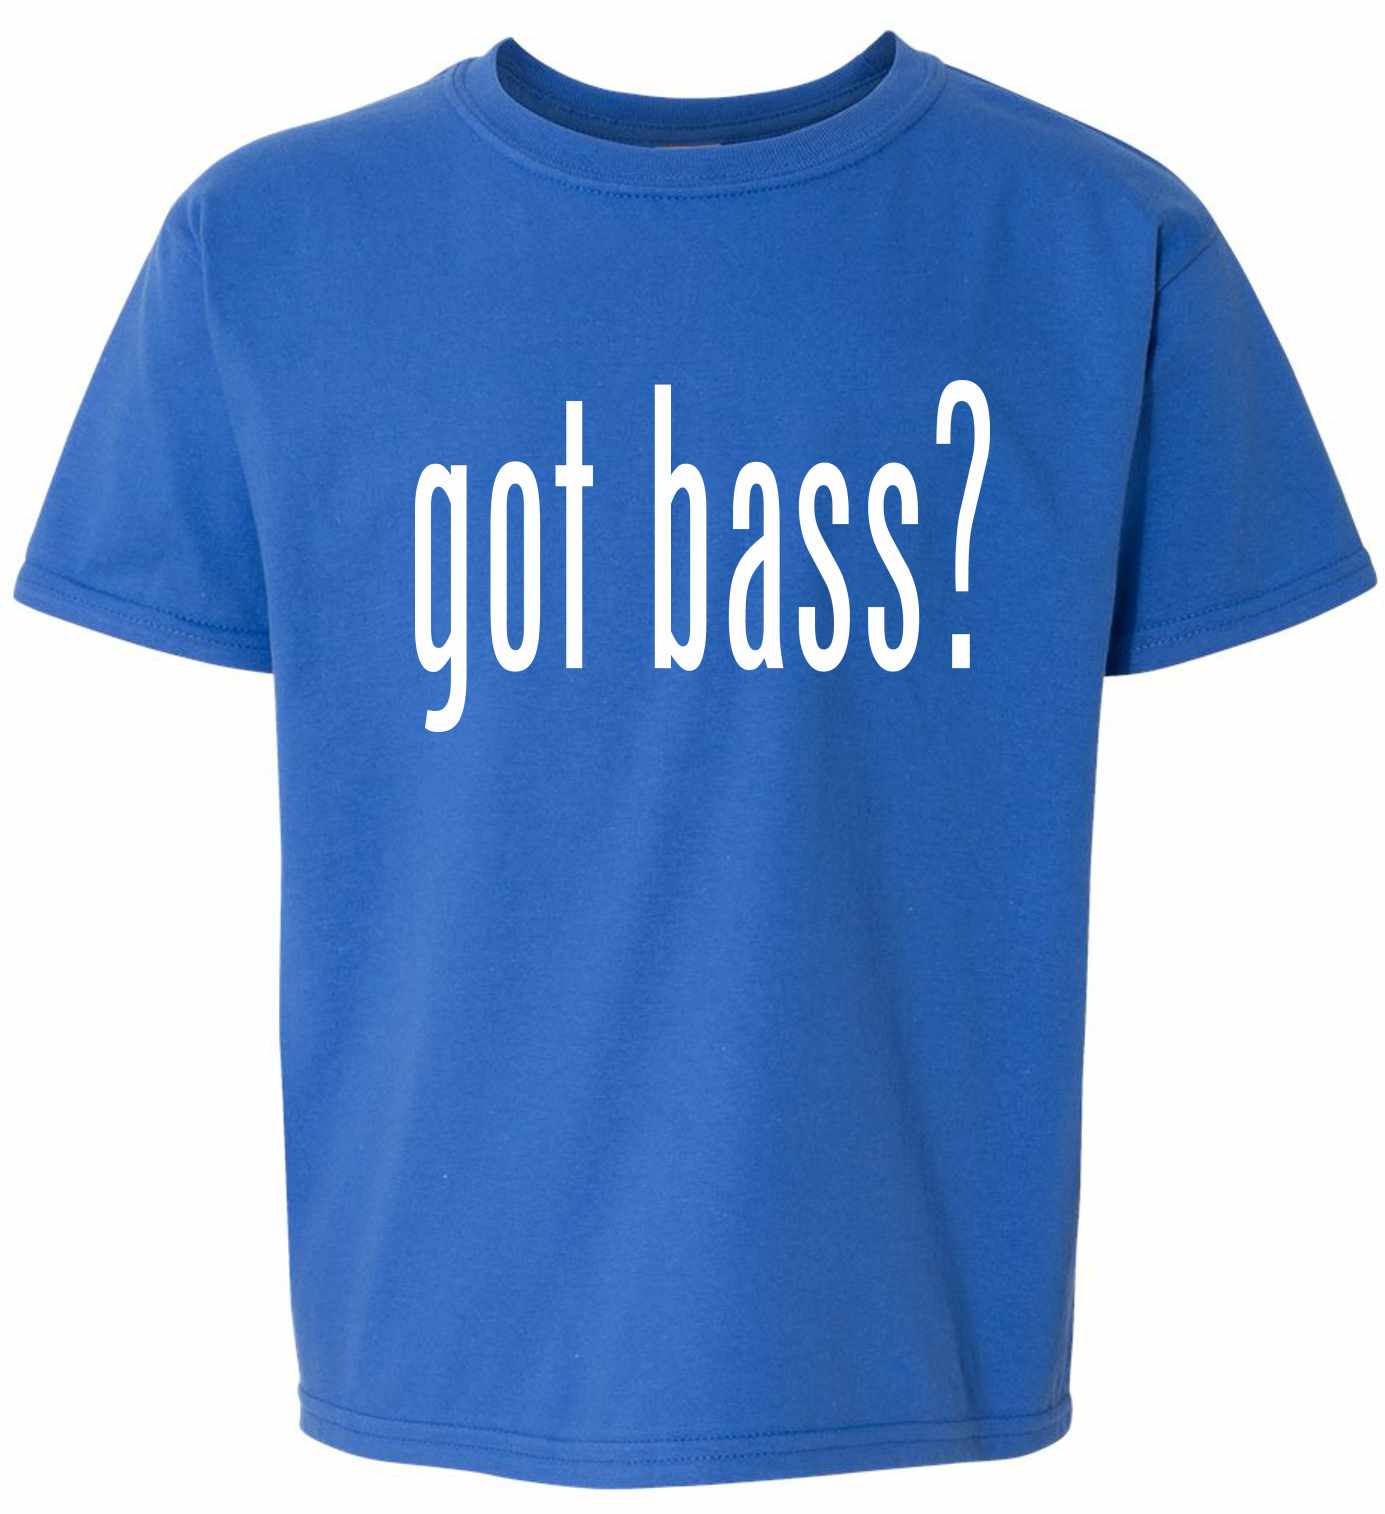 Got Bass? on Kids T-Shirt